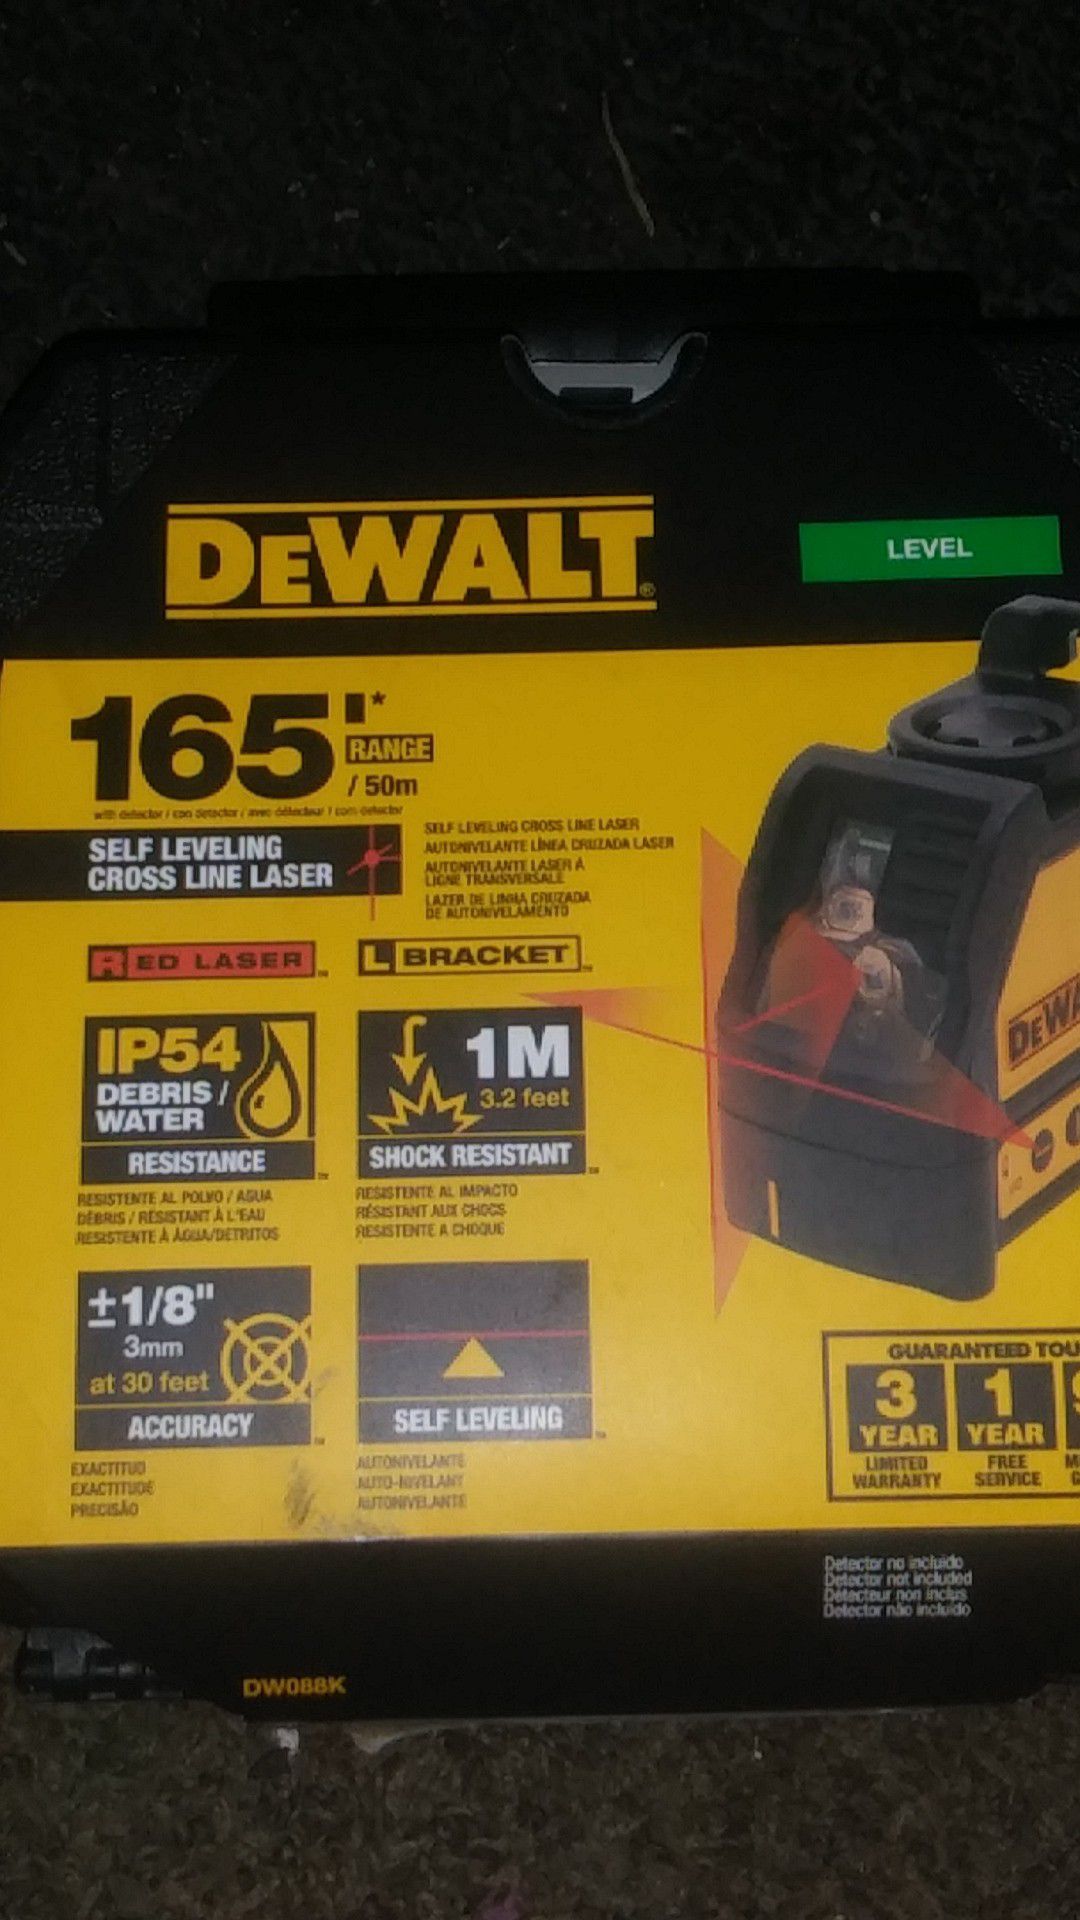 Dewalt 165' laser level